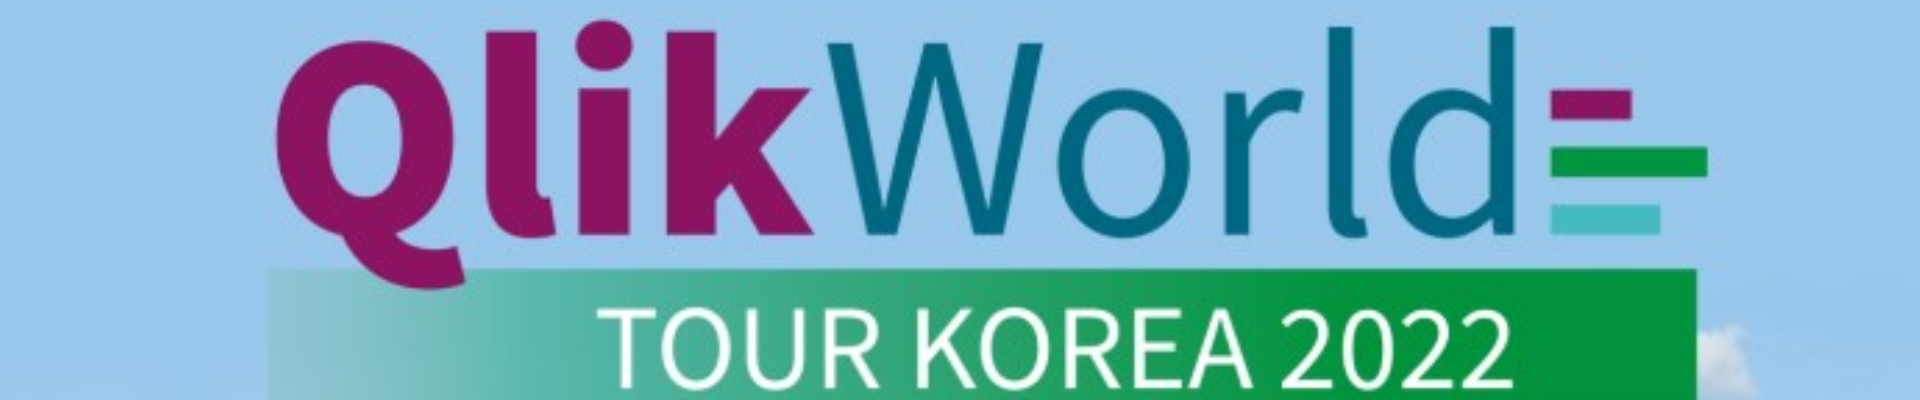  [Qlik] "Qlik World Tour Korea 2022"